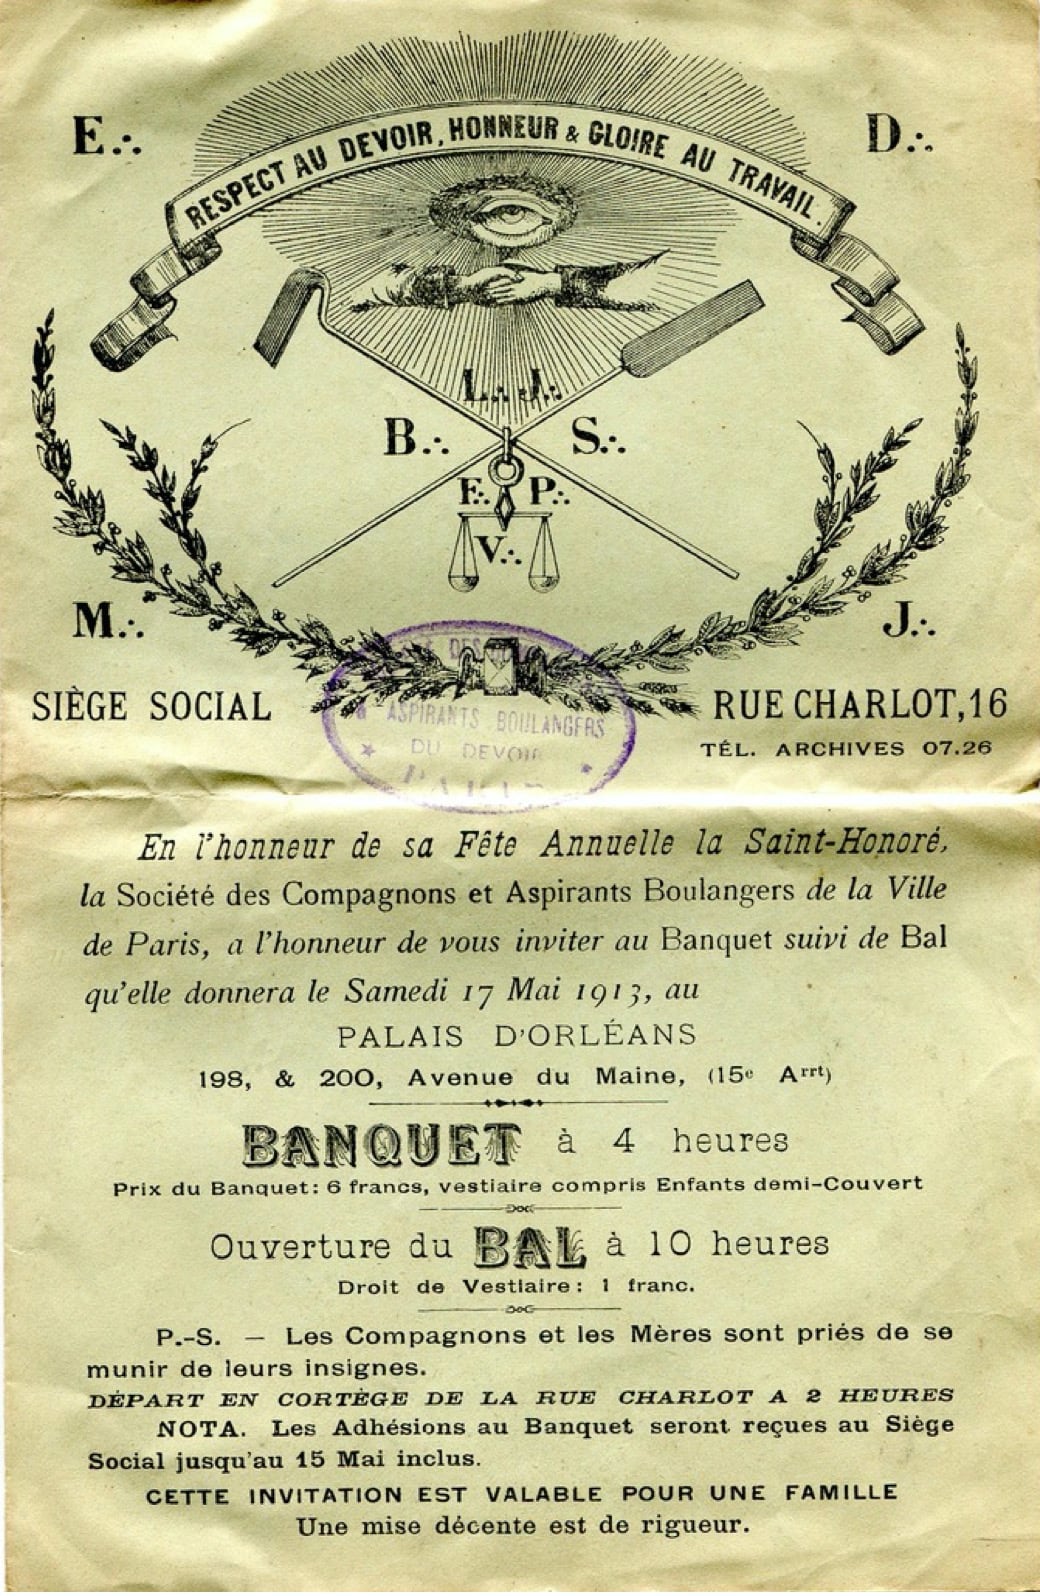 Saint-Honoré Paris 1913